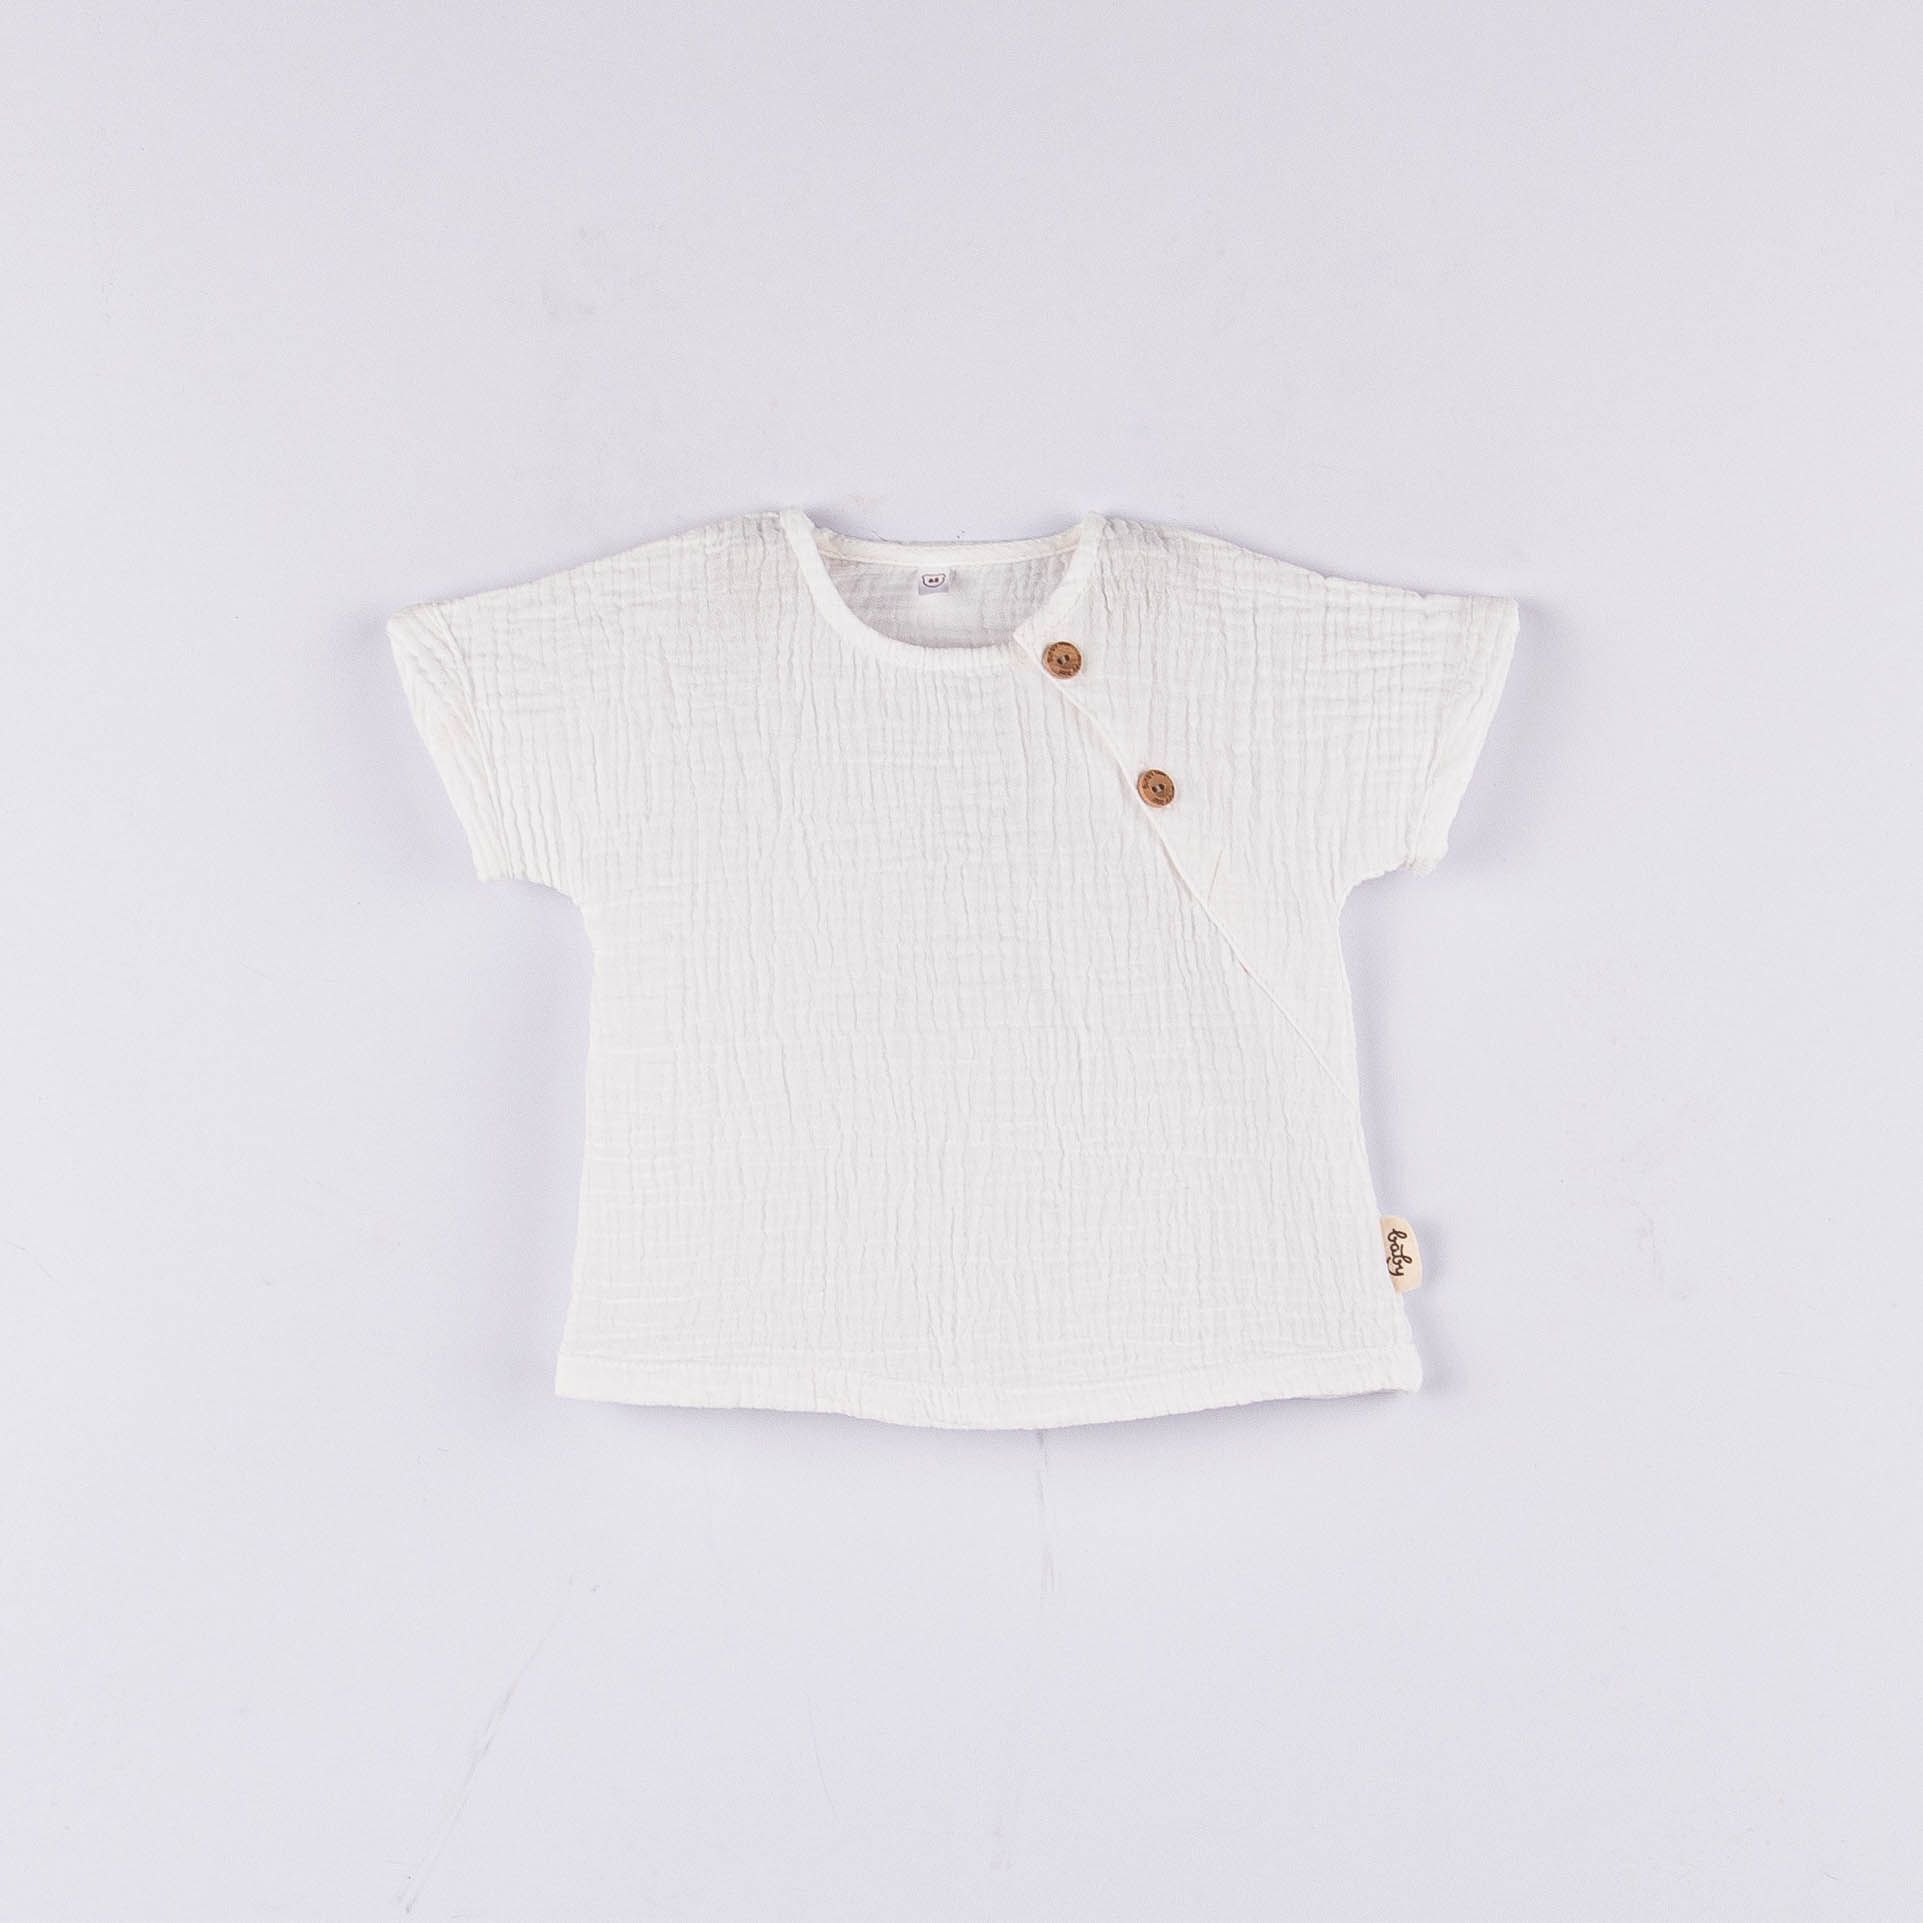 Muslin shirt 0-3 months - Heavy Cream